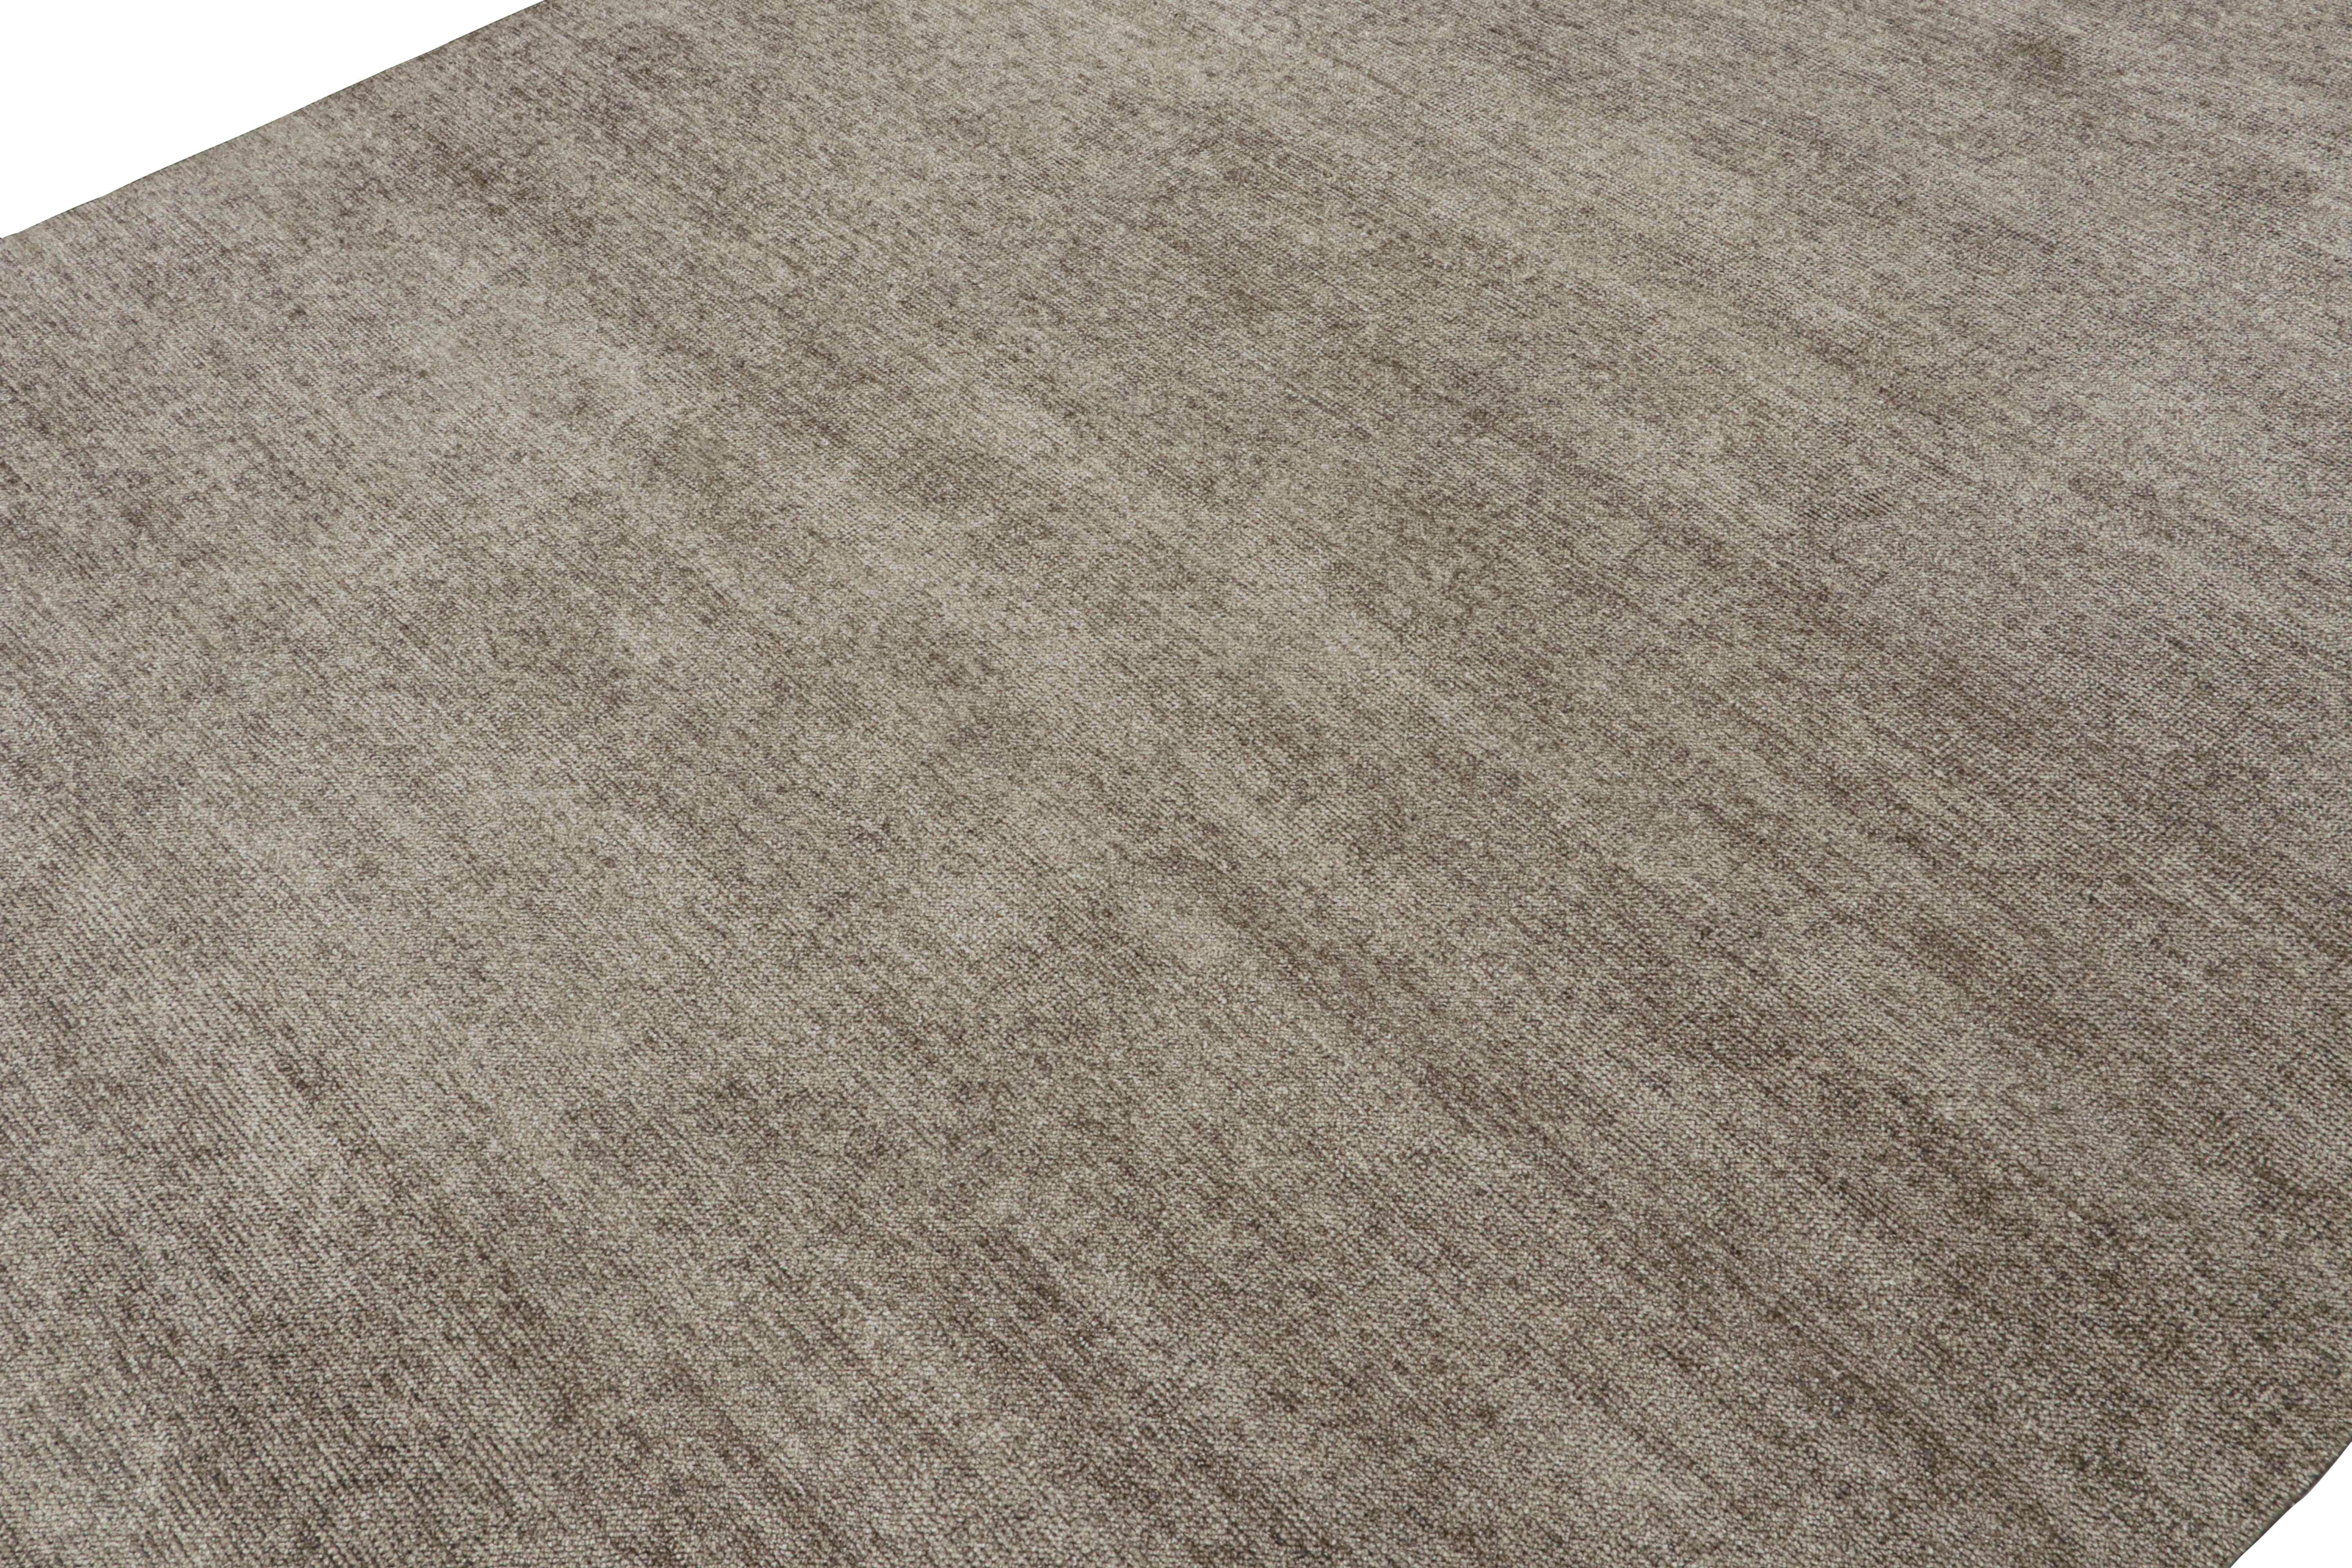 Moderner Teppich von Rug & Kilim in massivem silber-grauem Ton-in-Ton-Streifendesign (Handgeknüpft) im Angebot